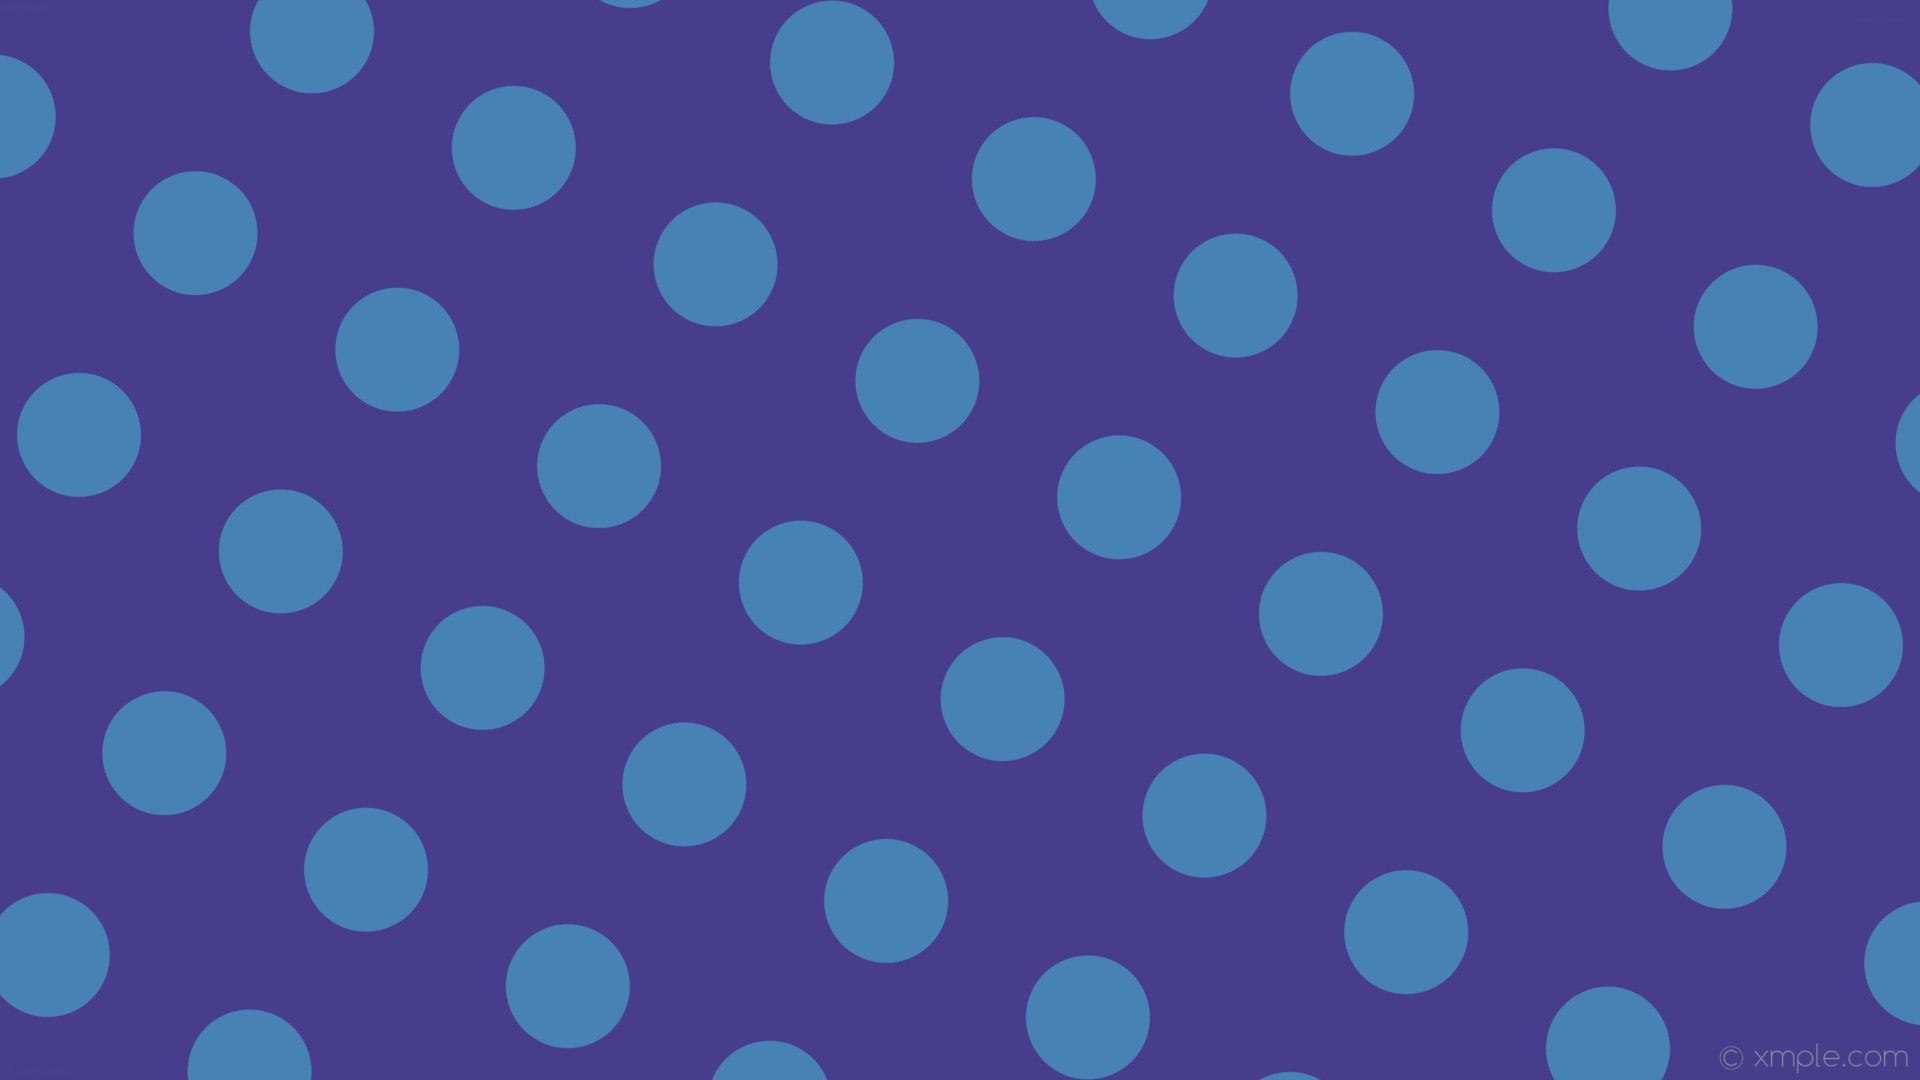 1920x1080 wallpaper blue purple spots dots polka dark slate blue steel blue #483d8b  #4682b4 150